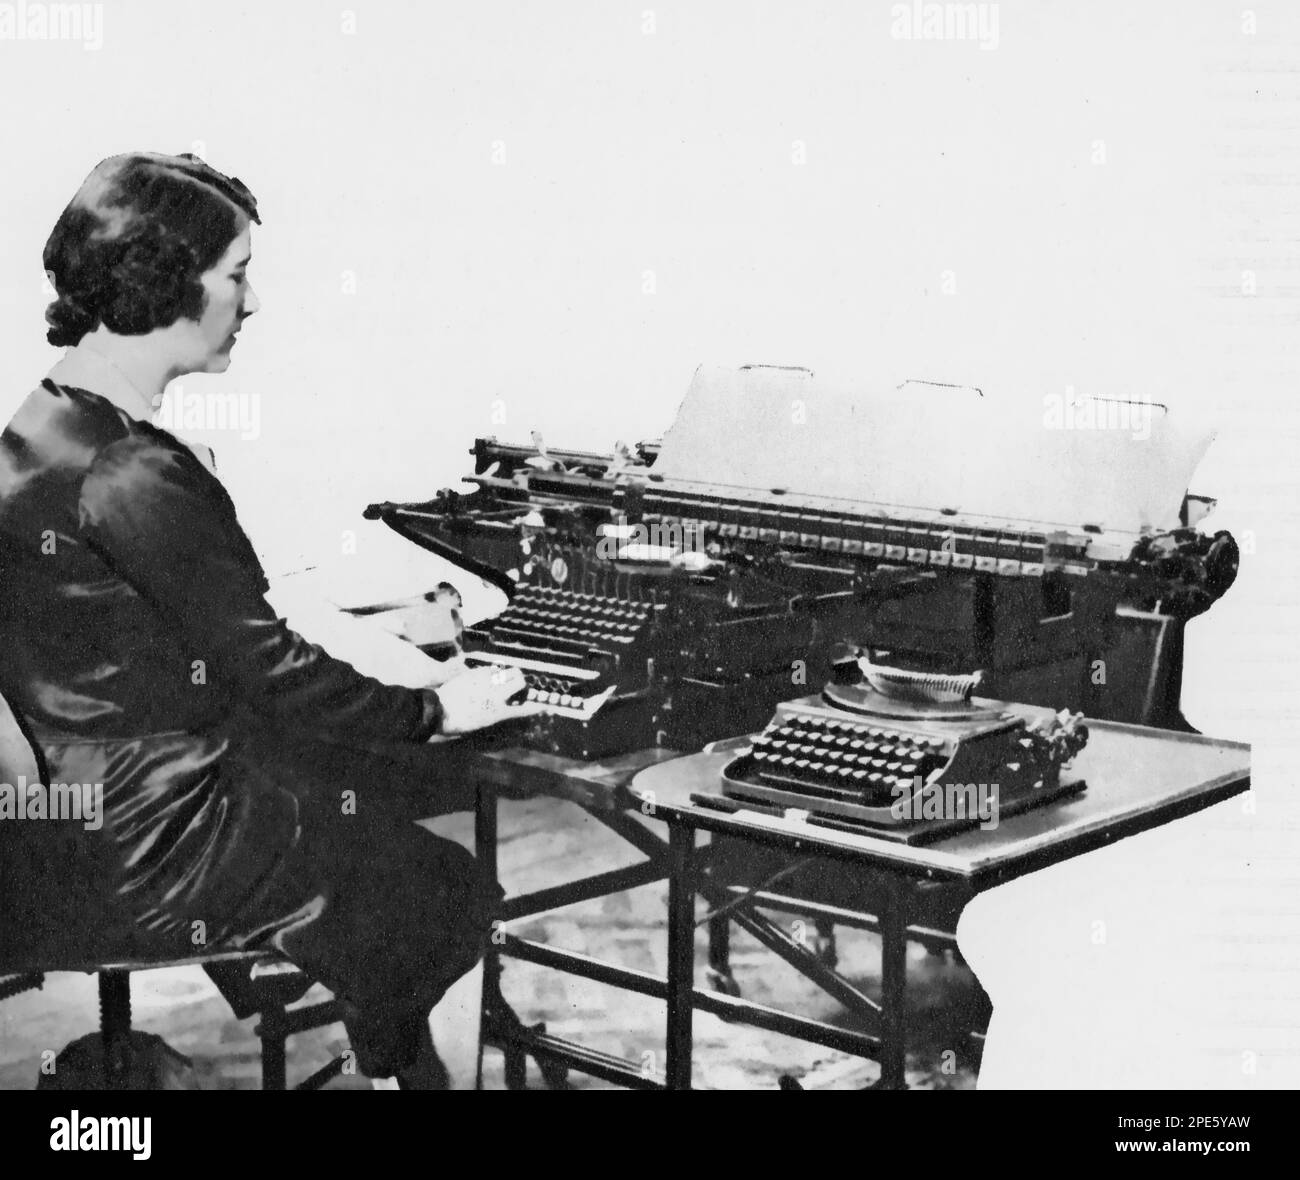 Una donna che usa una macchina da tabulazione, c1933. La macchina tabulatore era una macchina elettromeccanica progettata per fornire un riepilogo delle informazioni memorizzate sulle schede perforate. Inventata da Herman Hollerith (1860-1929), la macchina è stata sviluppata per facilitare l'elaborazione dei dati per il censimento degli Stati Uniti del 1890. I modelli successivi sono stati ampiamente utilizzati per applicazioni aziendali come la contabilità e il controllo dell'inventario. Foto Stock